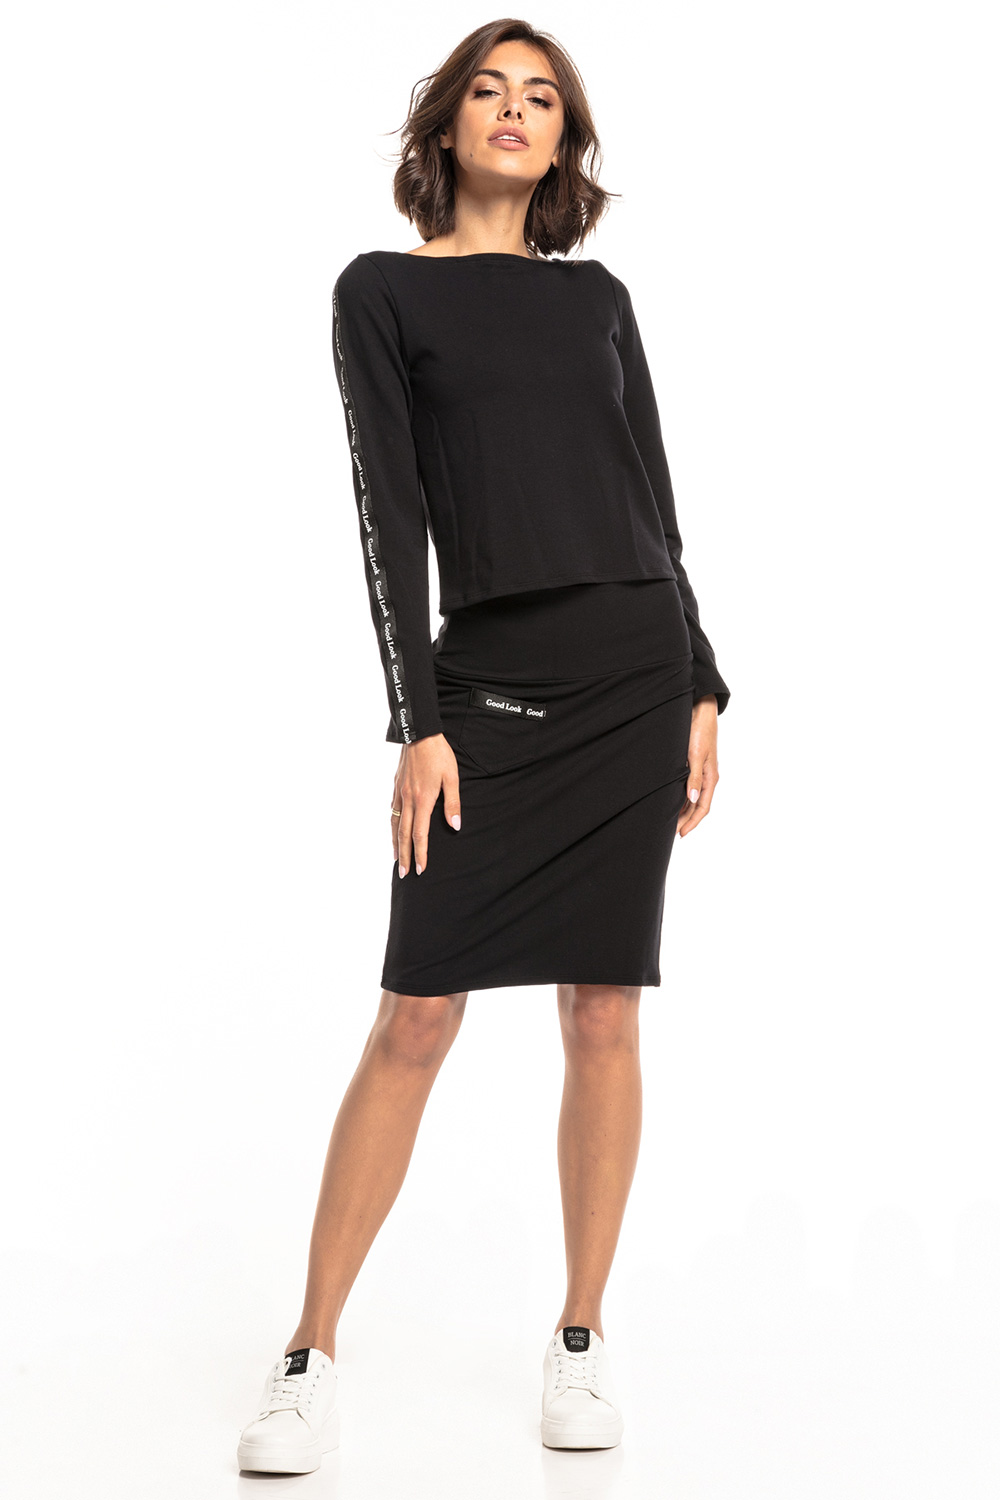  Skirt model 148162 Tessita  black